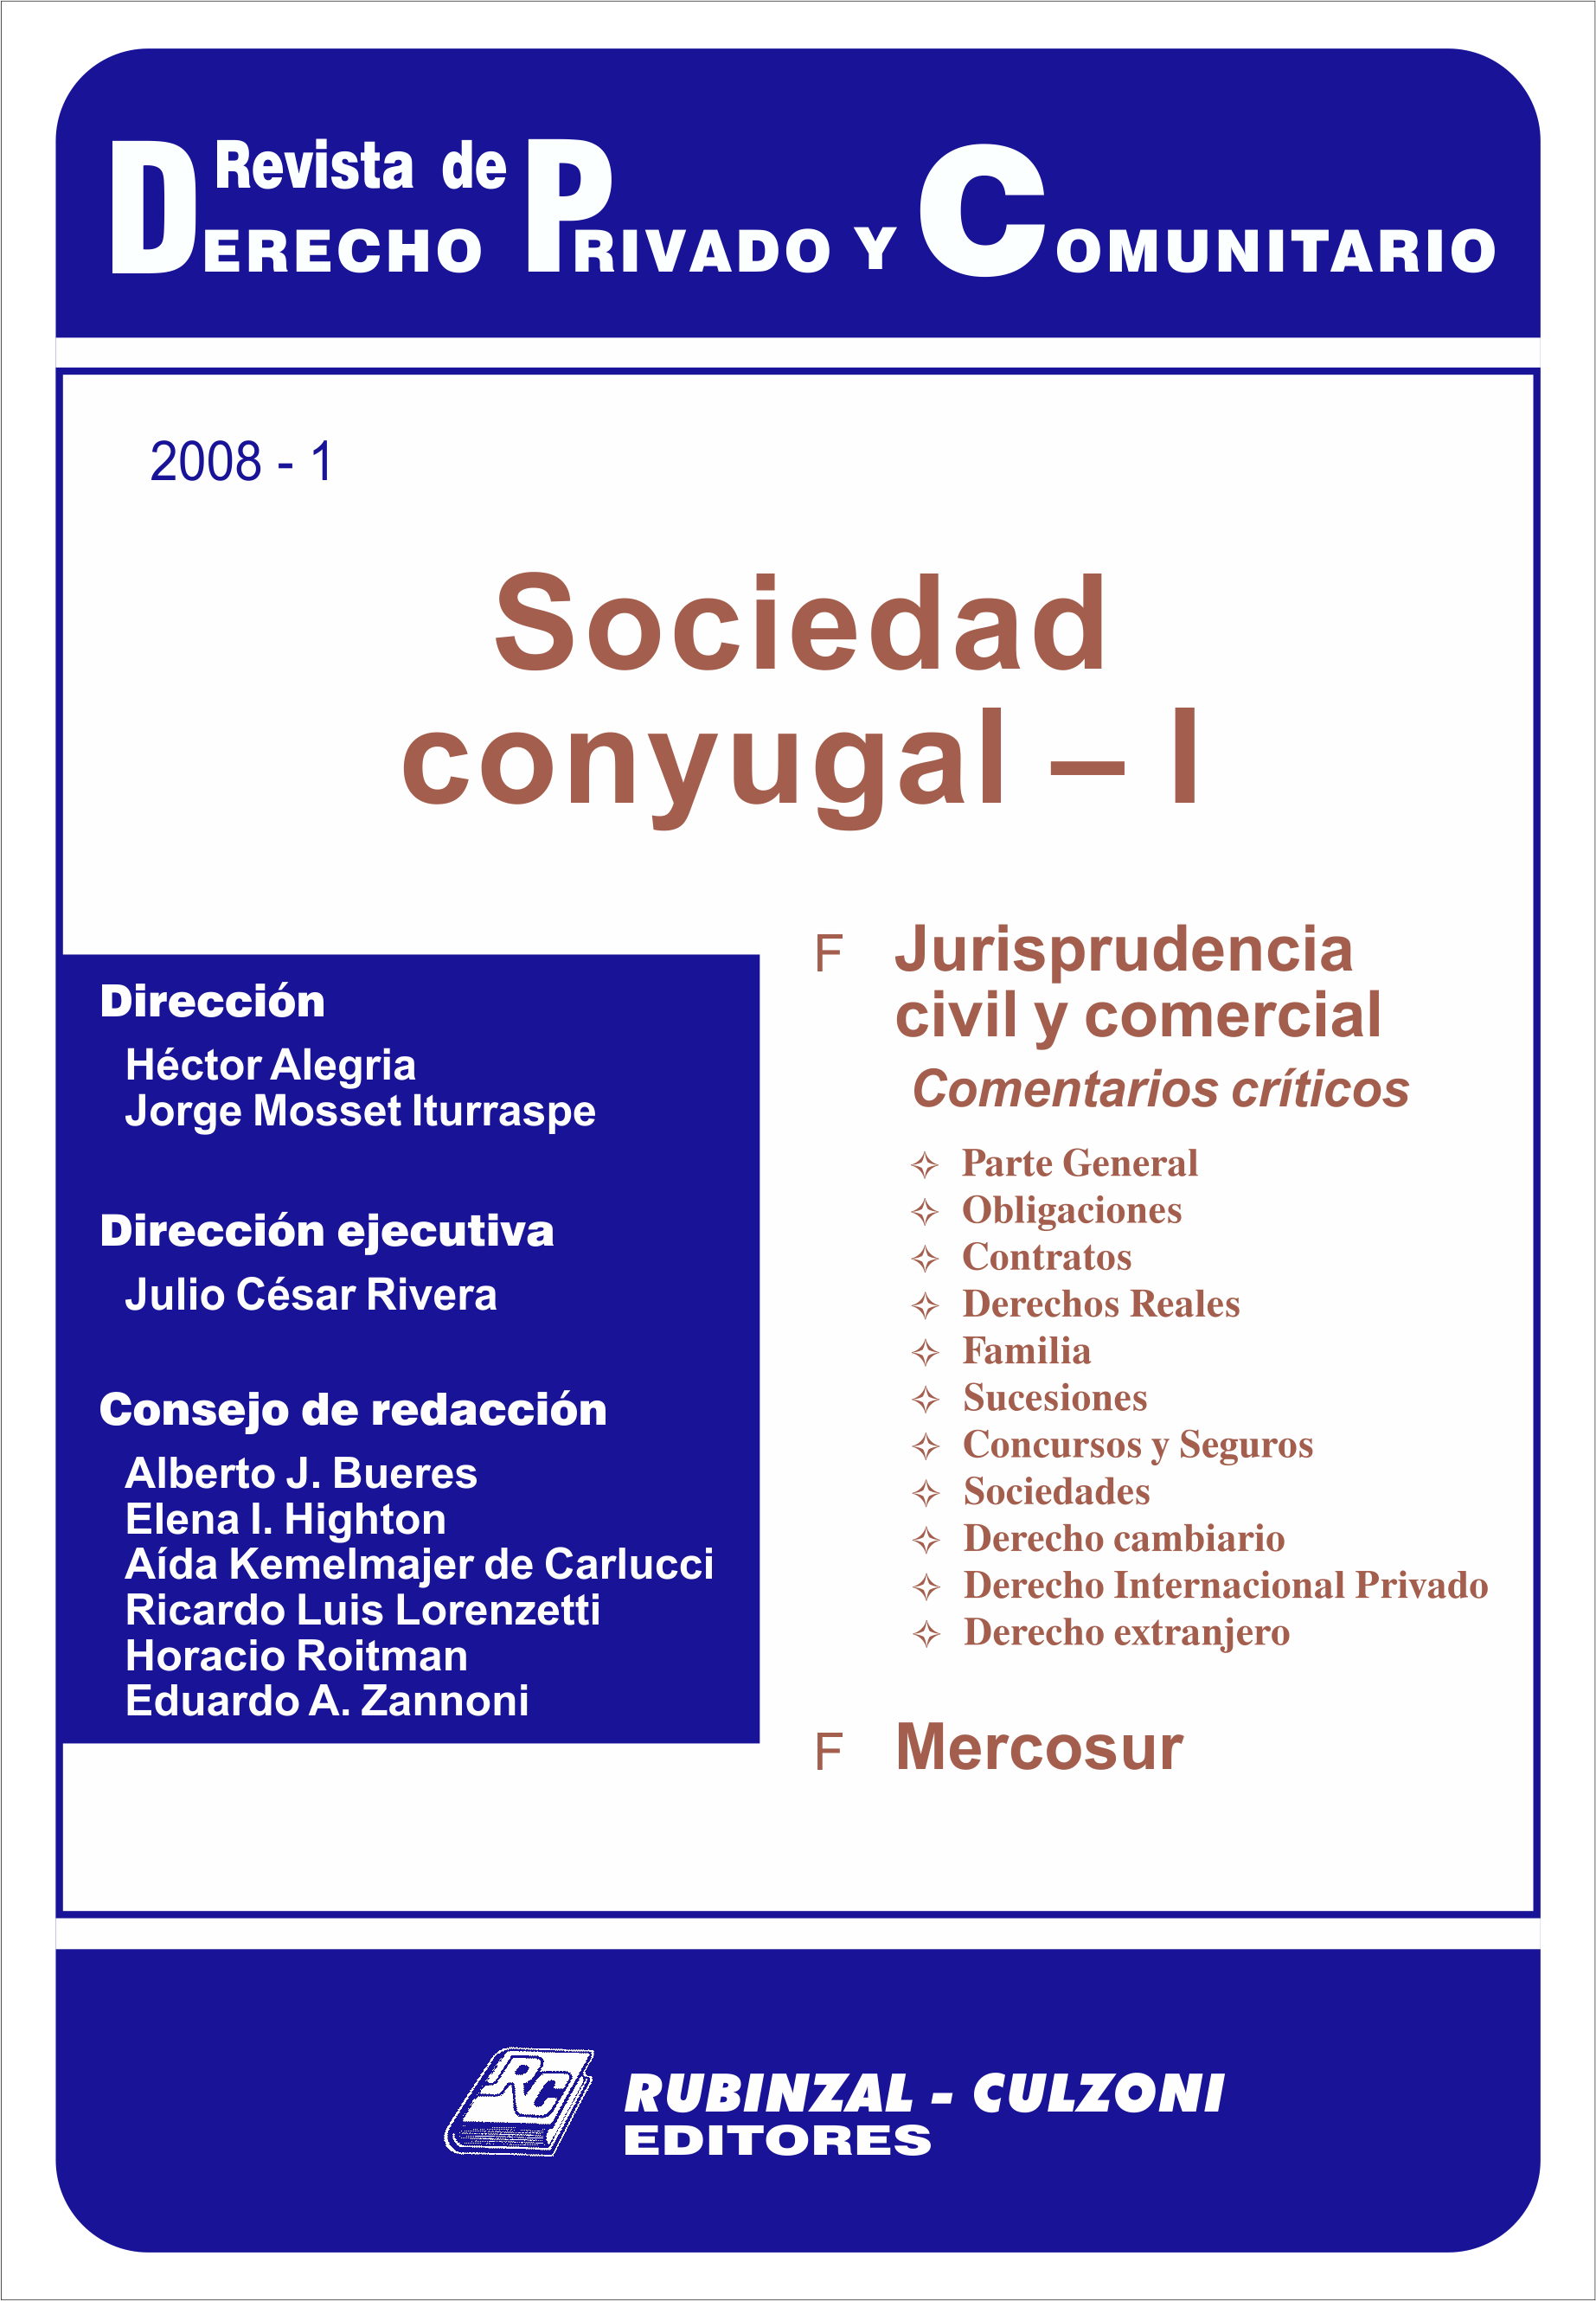 Revista de Derecho Privado y Comunitario - Sociedad conyugal - I.